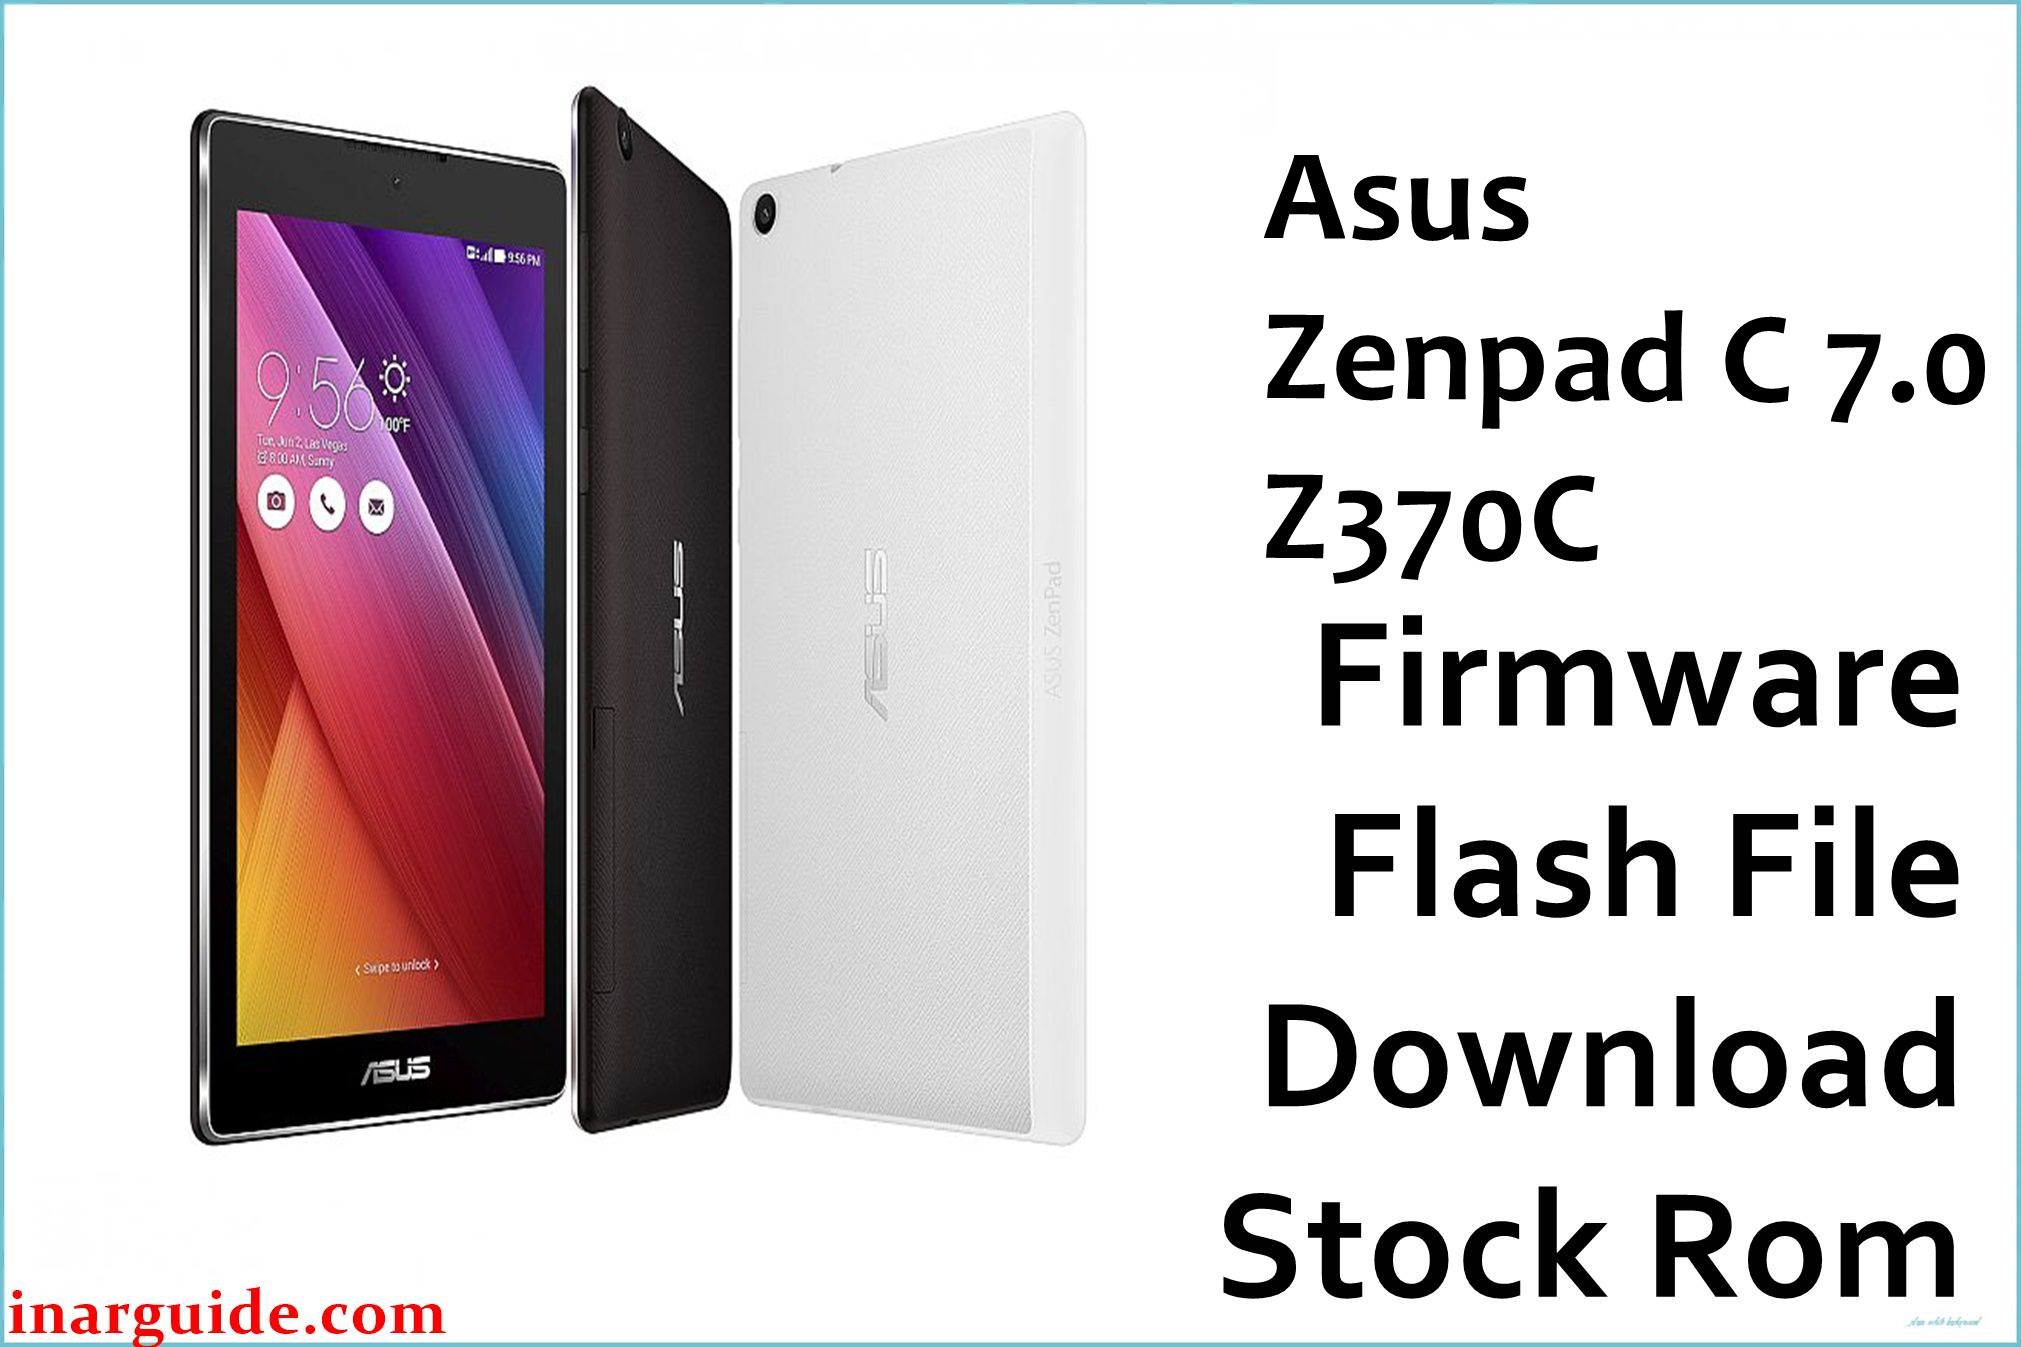 Asus Zenpad C 7.0 Z370C